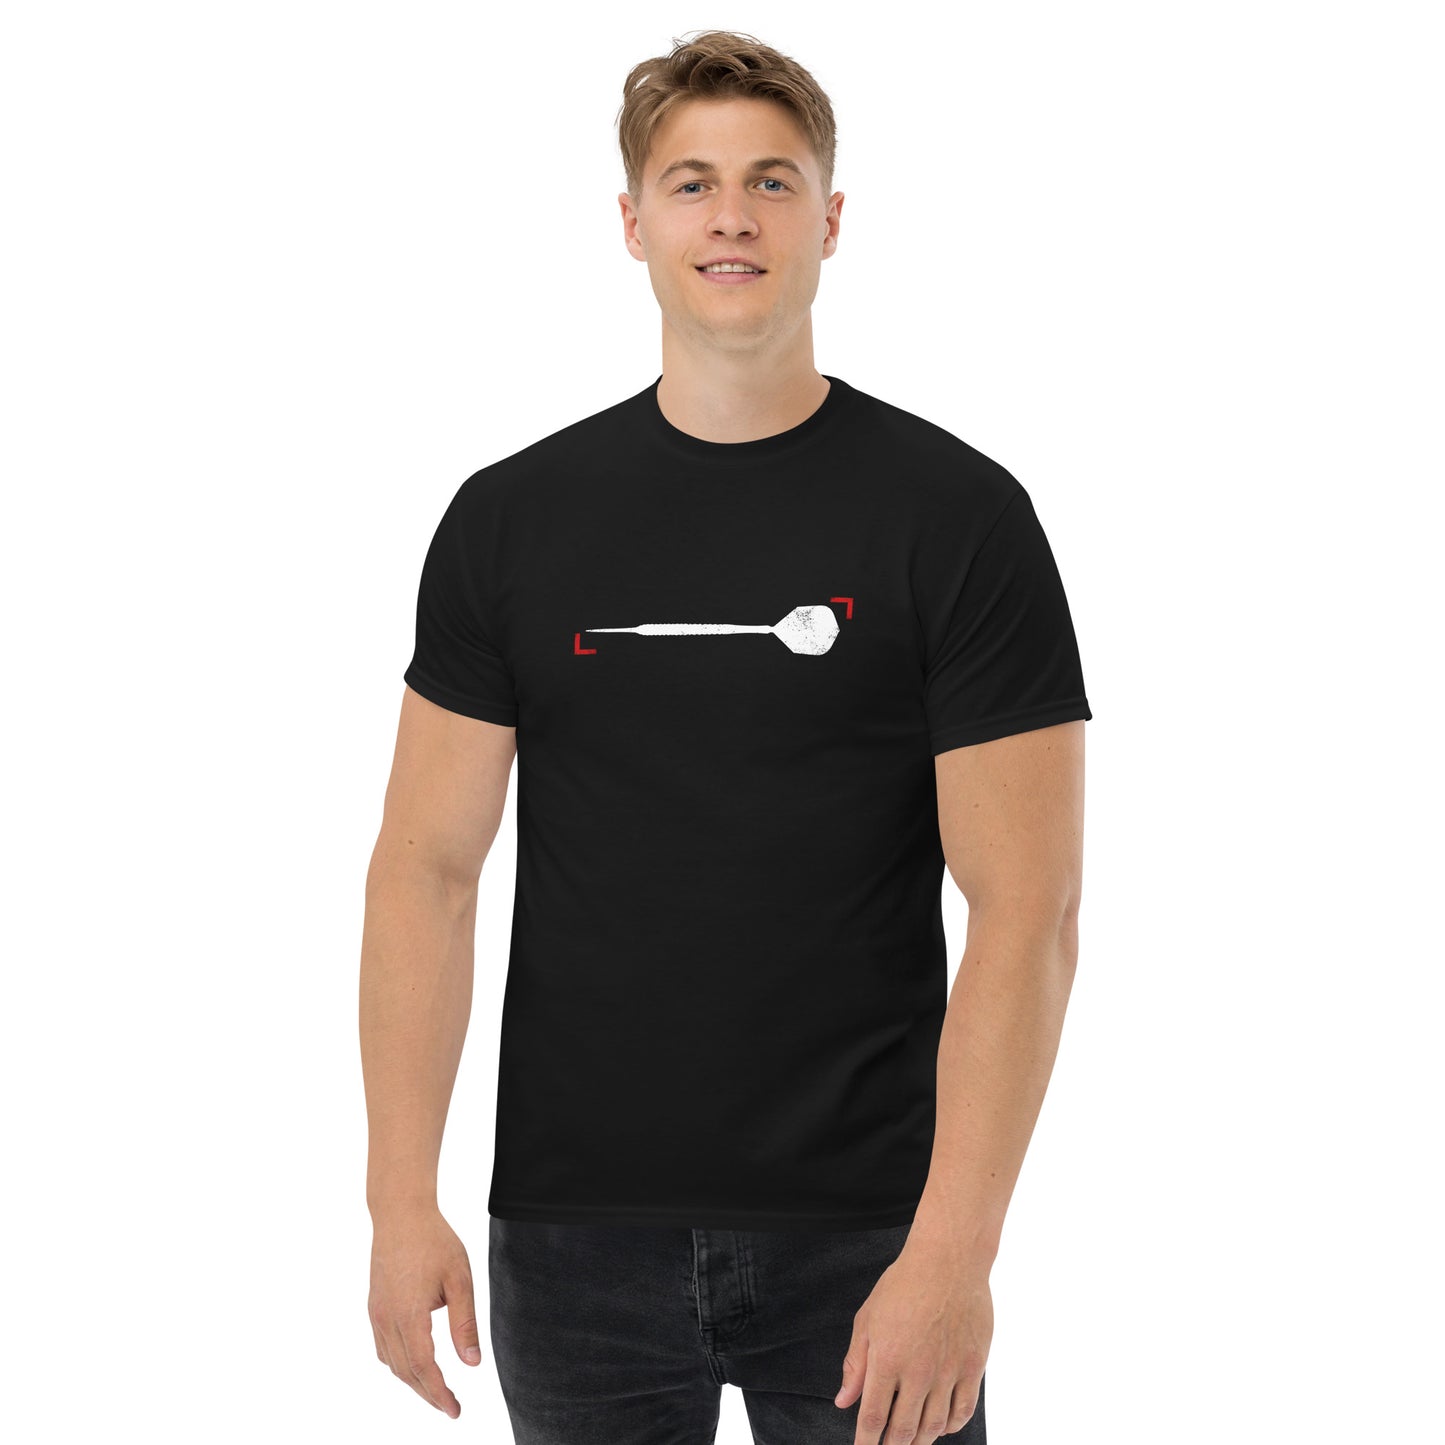 Klassisches T-Shirt Herren Dartpfeil 2 Grunge by Lupo